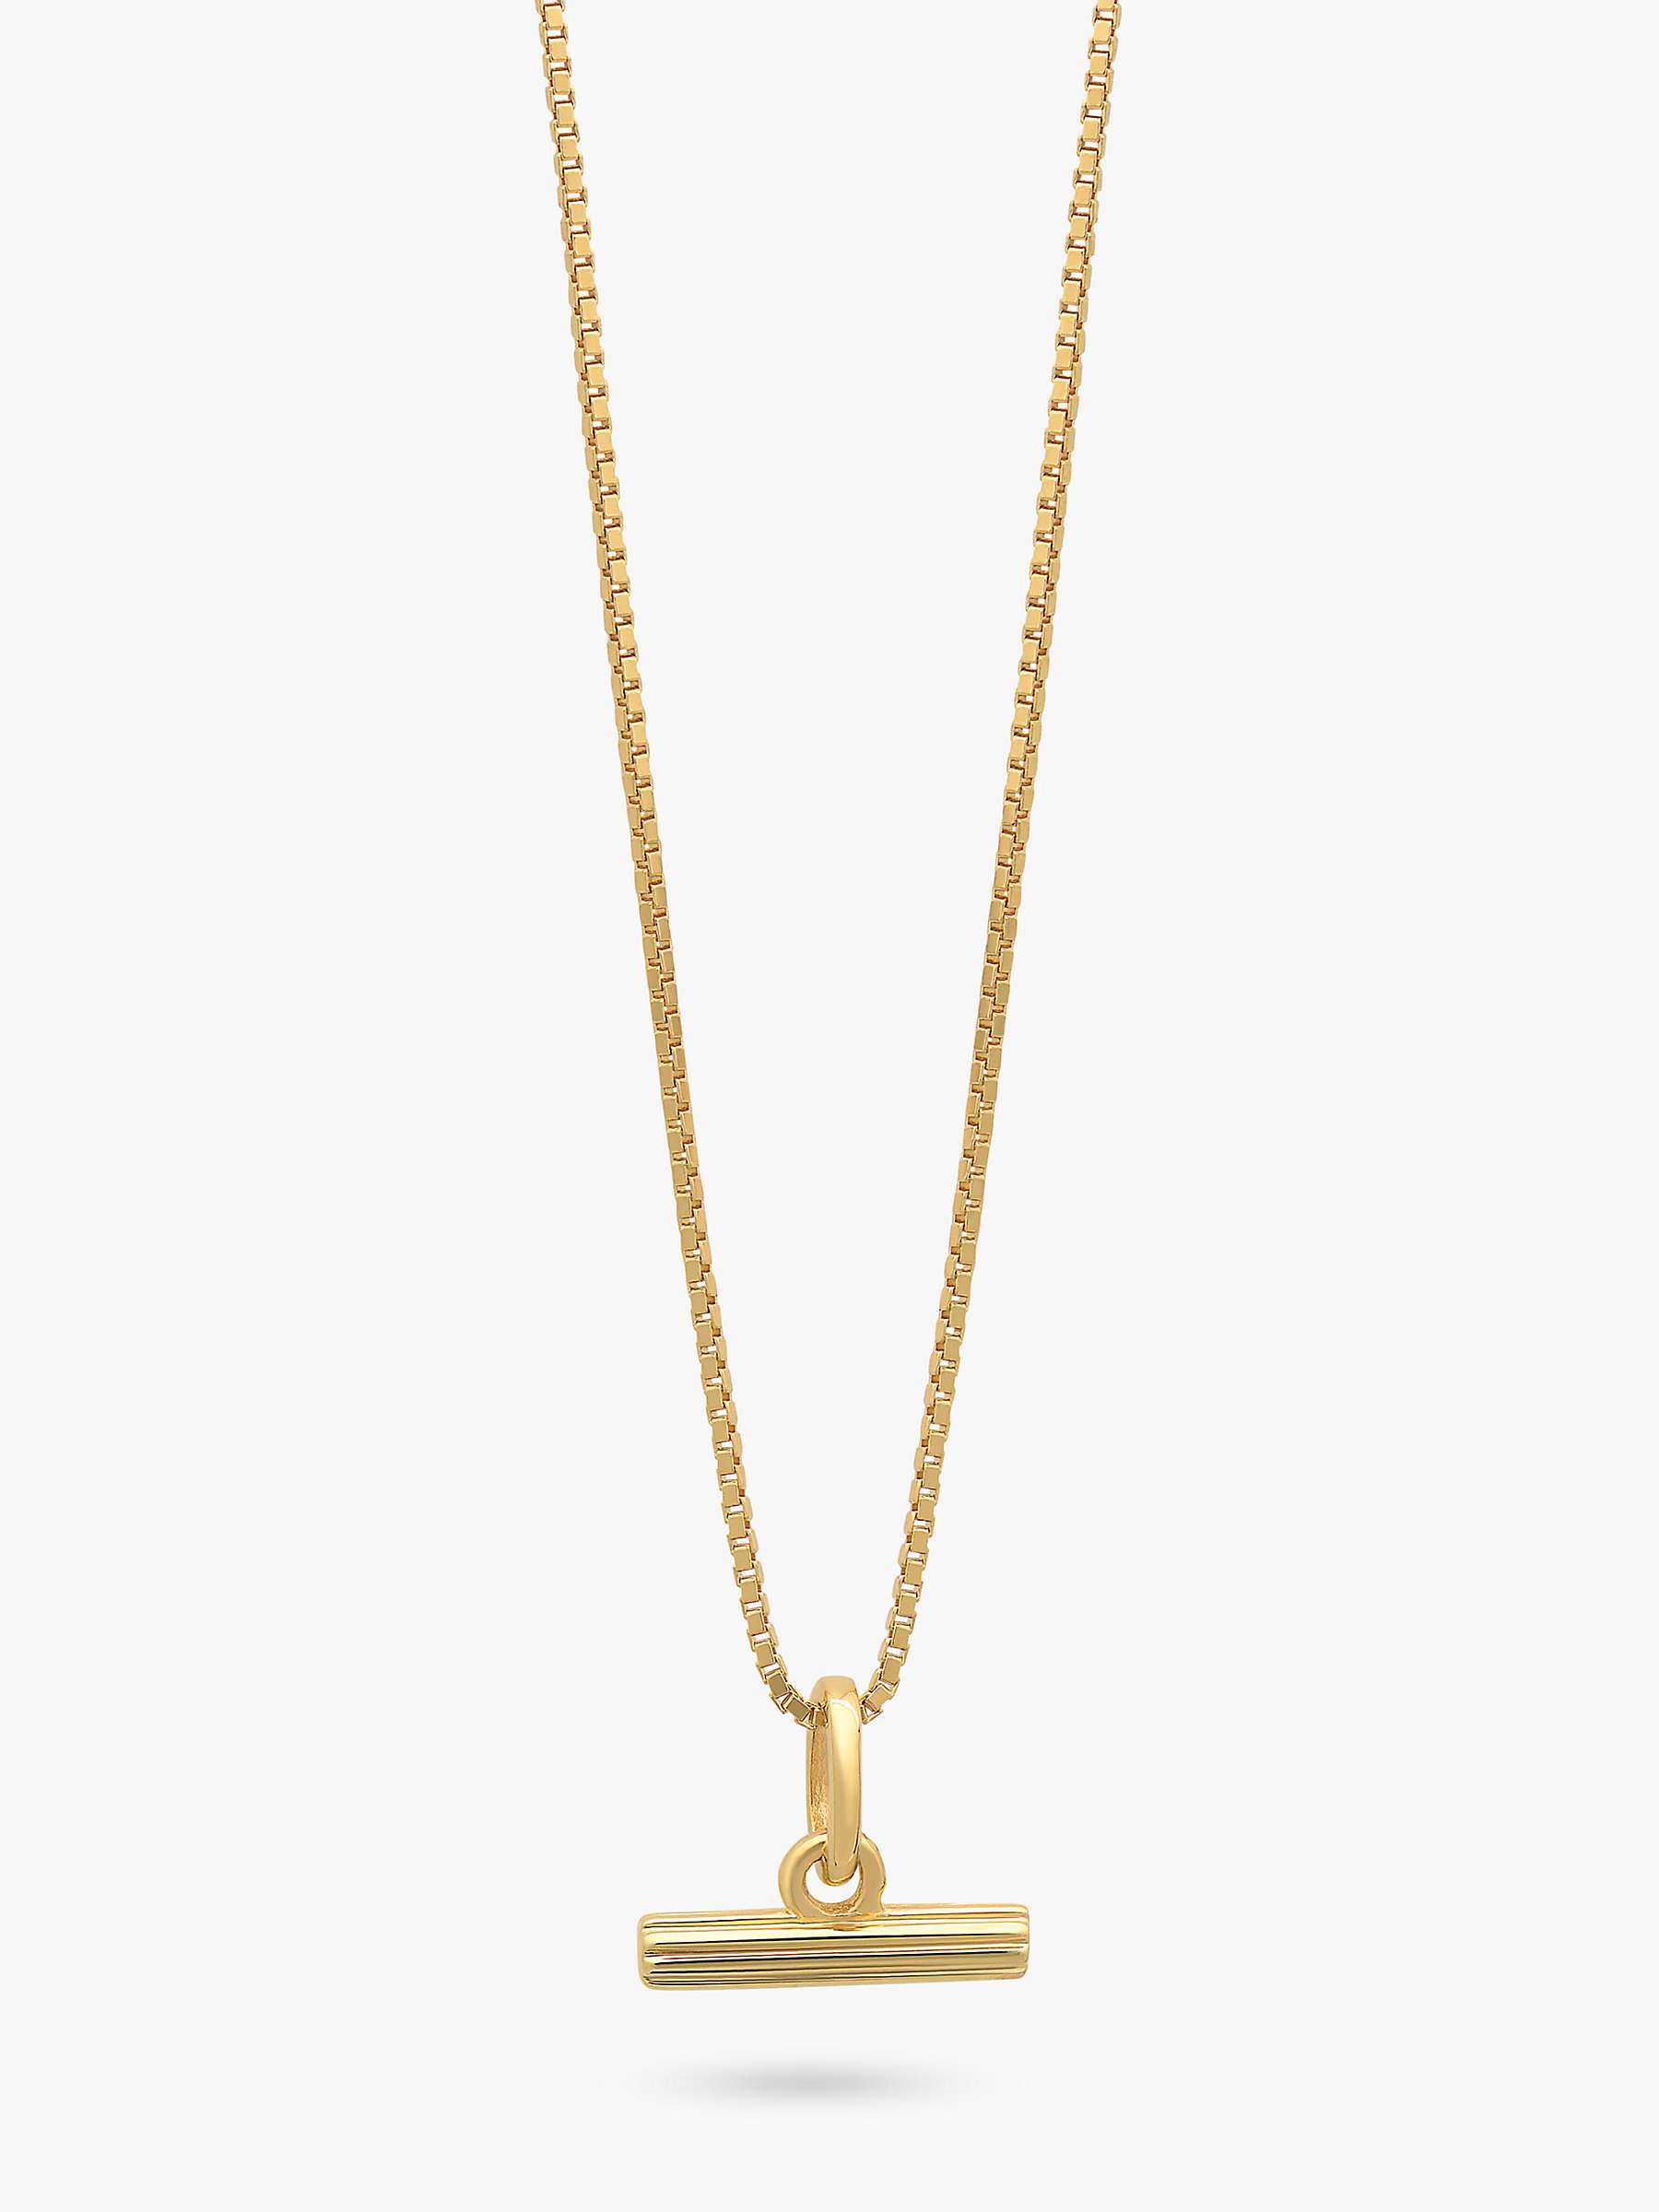 Buy Rachel Jackson London Mini T-Bar Necklace, Gold Online at johnlewis.com